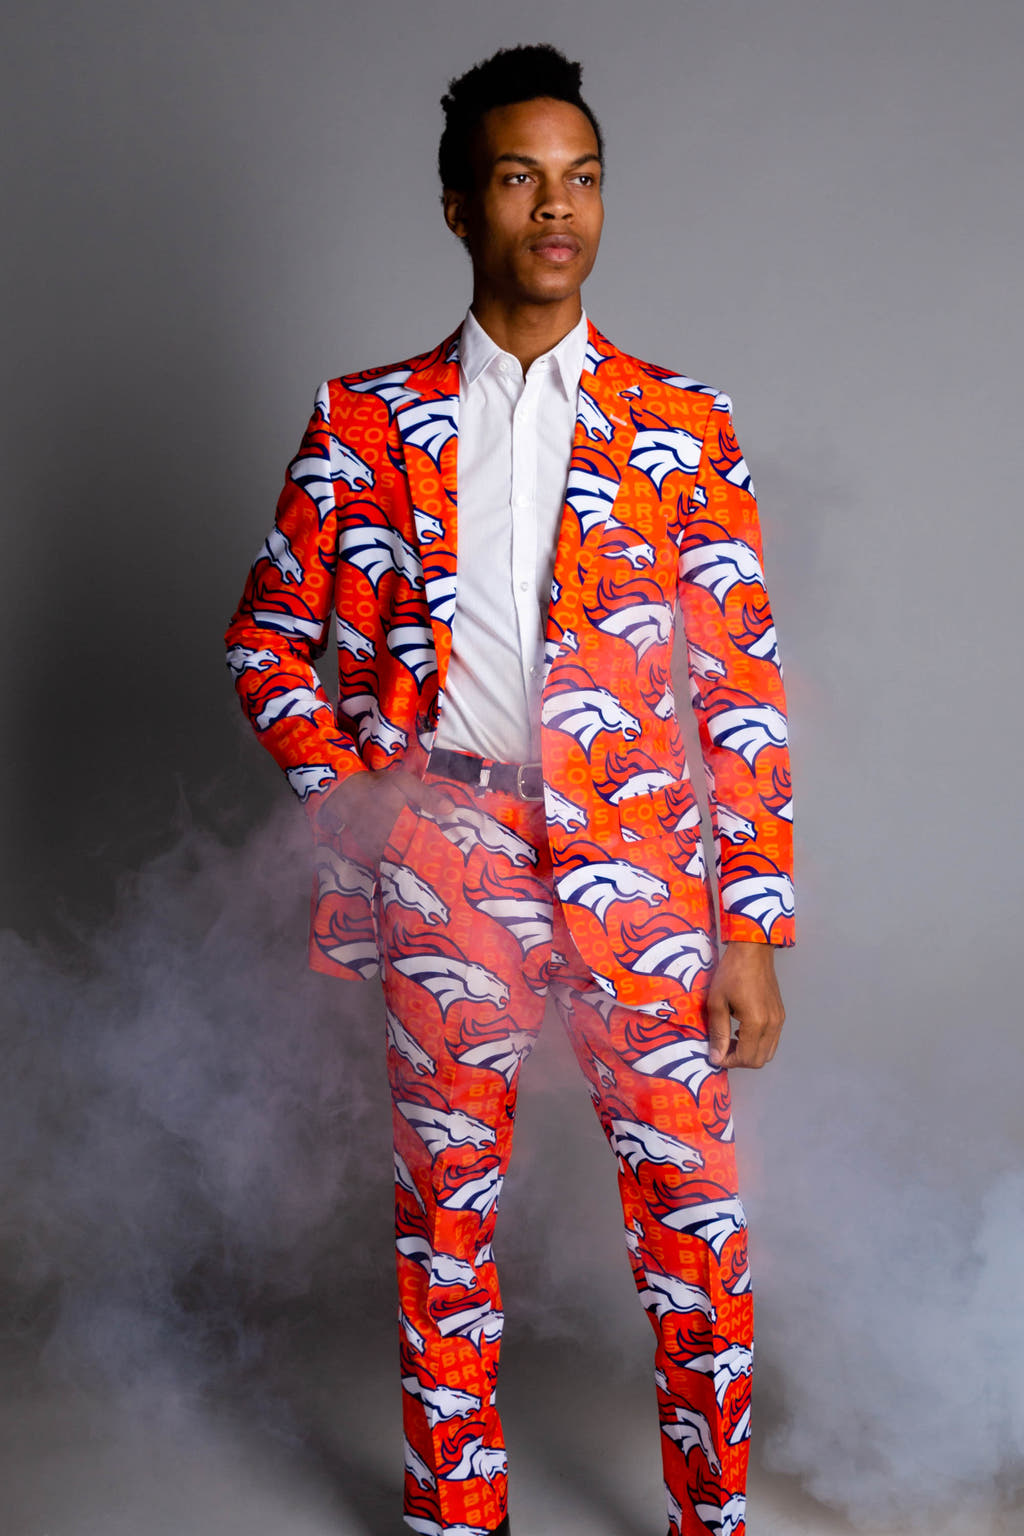 Denver Broncos NFL Gameday Suit Jacket